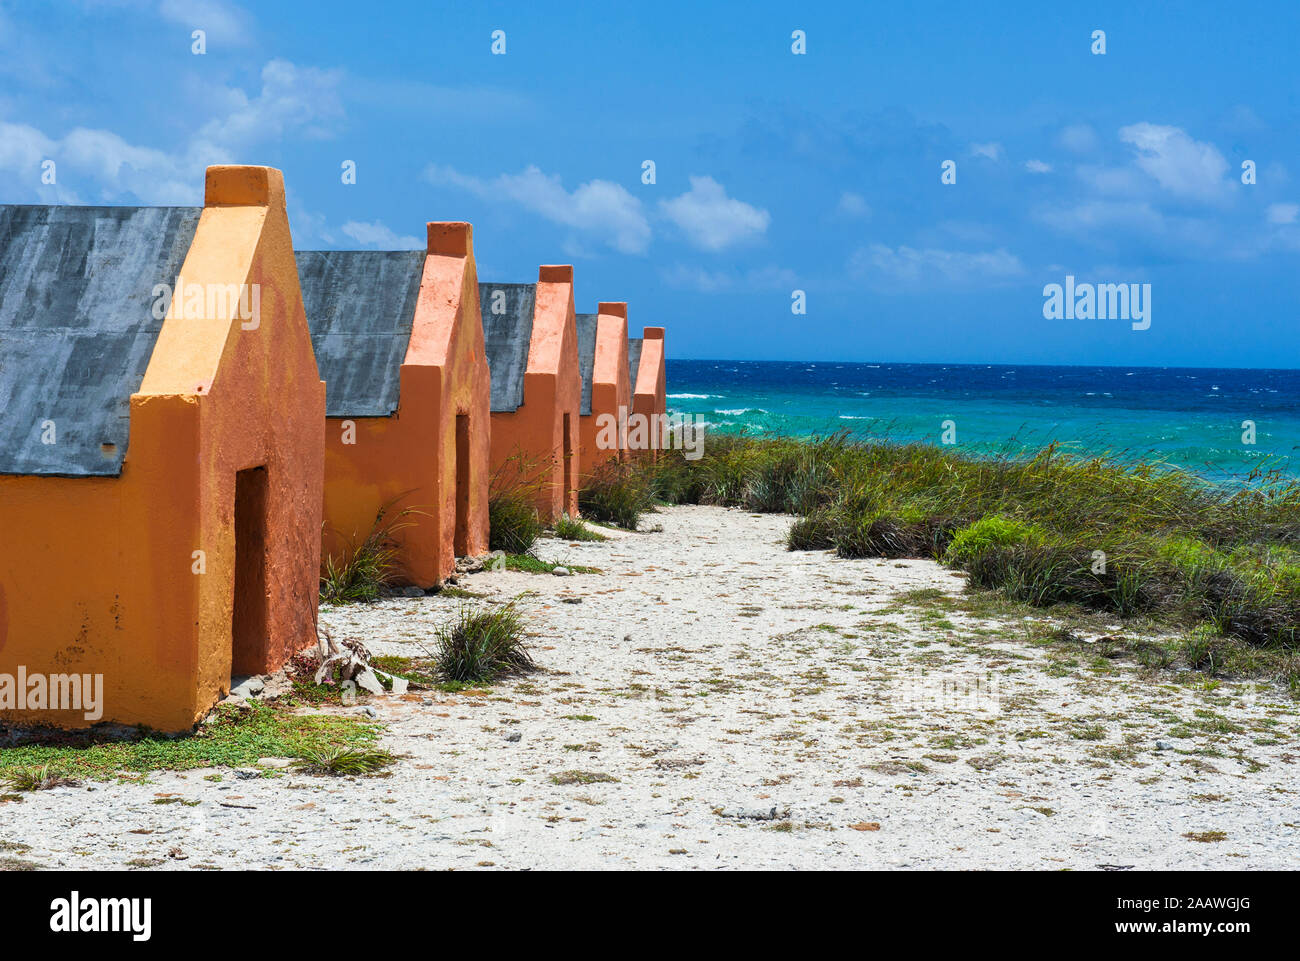 Slave Hütten am Strand gegen den blauen Himmel während der sonnigen Tag, Bonaire, ABC-Inseln, Karibik Niederlande Stockfoto